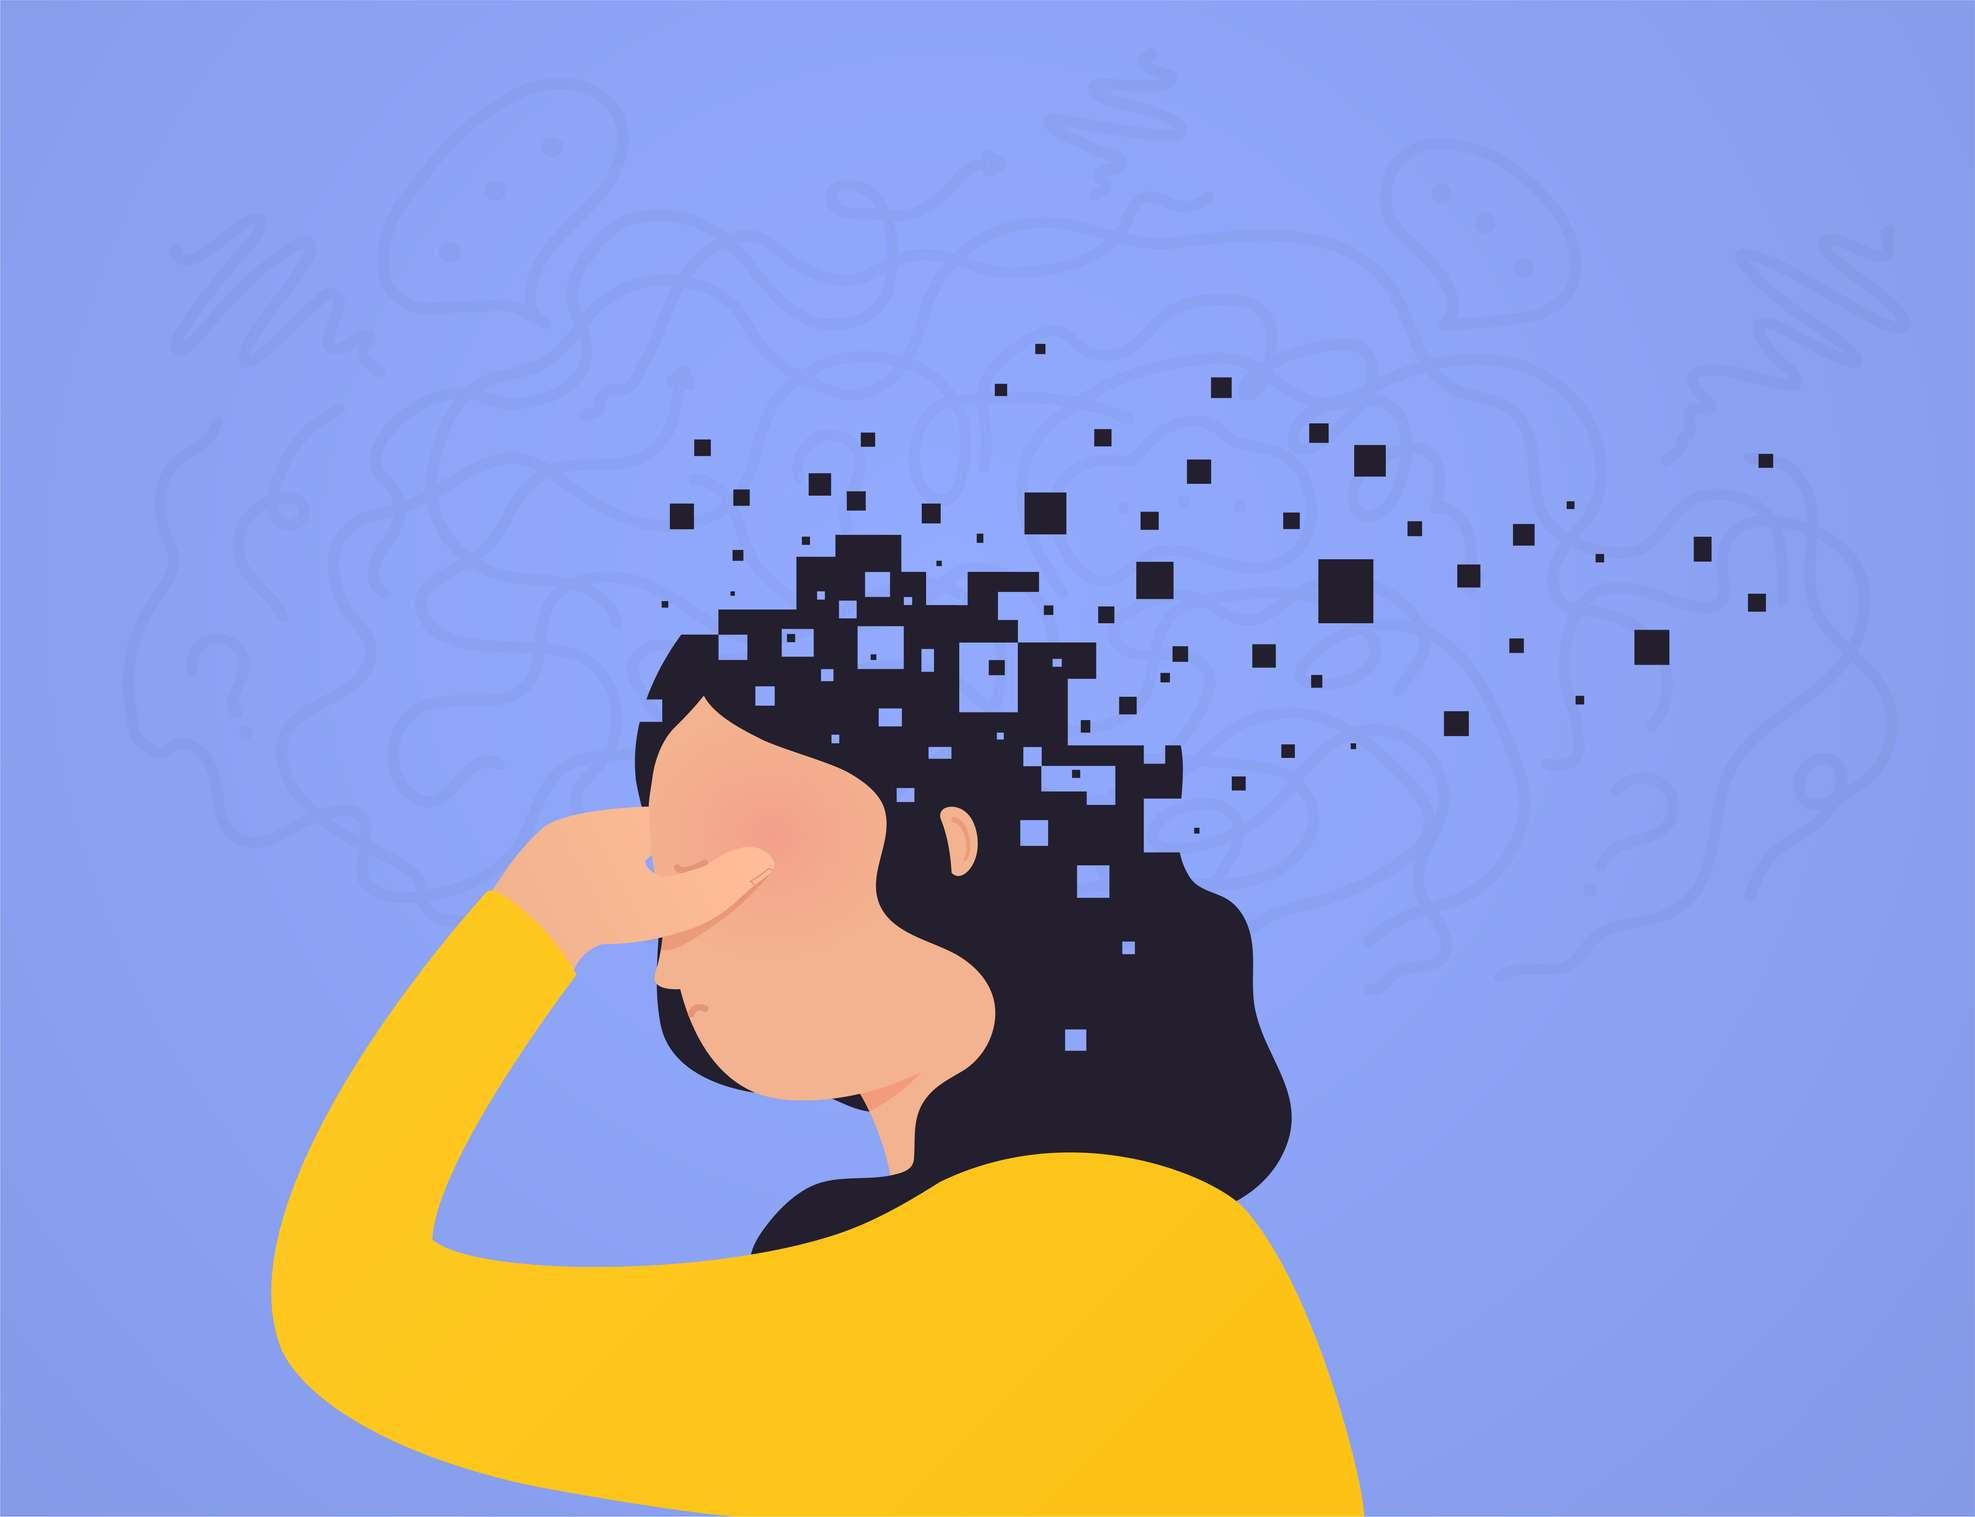 Gehirnschaden. Frau verliert einen Teil des Kopfes, der auseinanderfällt, Pixel. Konzept psychische Gesundheit, verminderte Funktionen Geist.